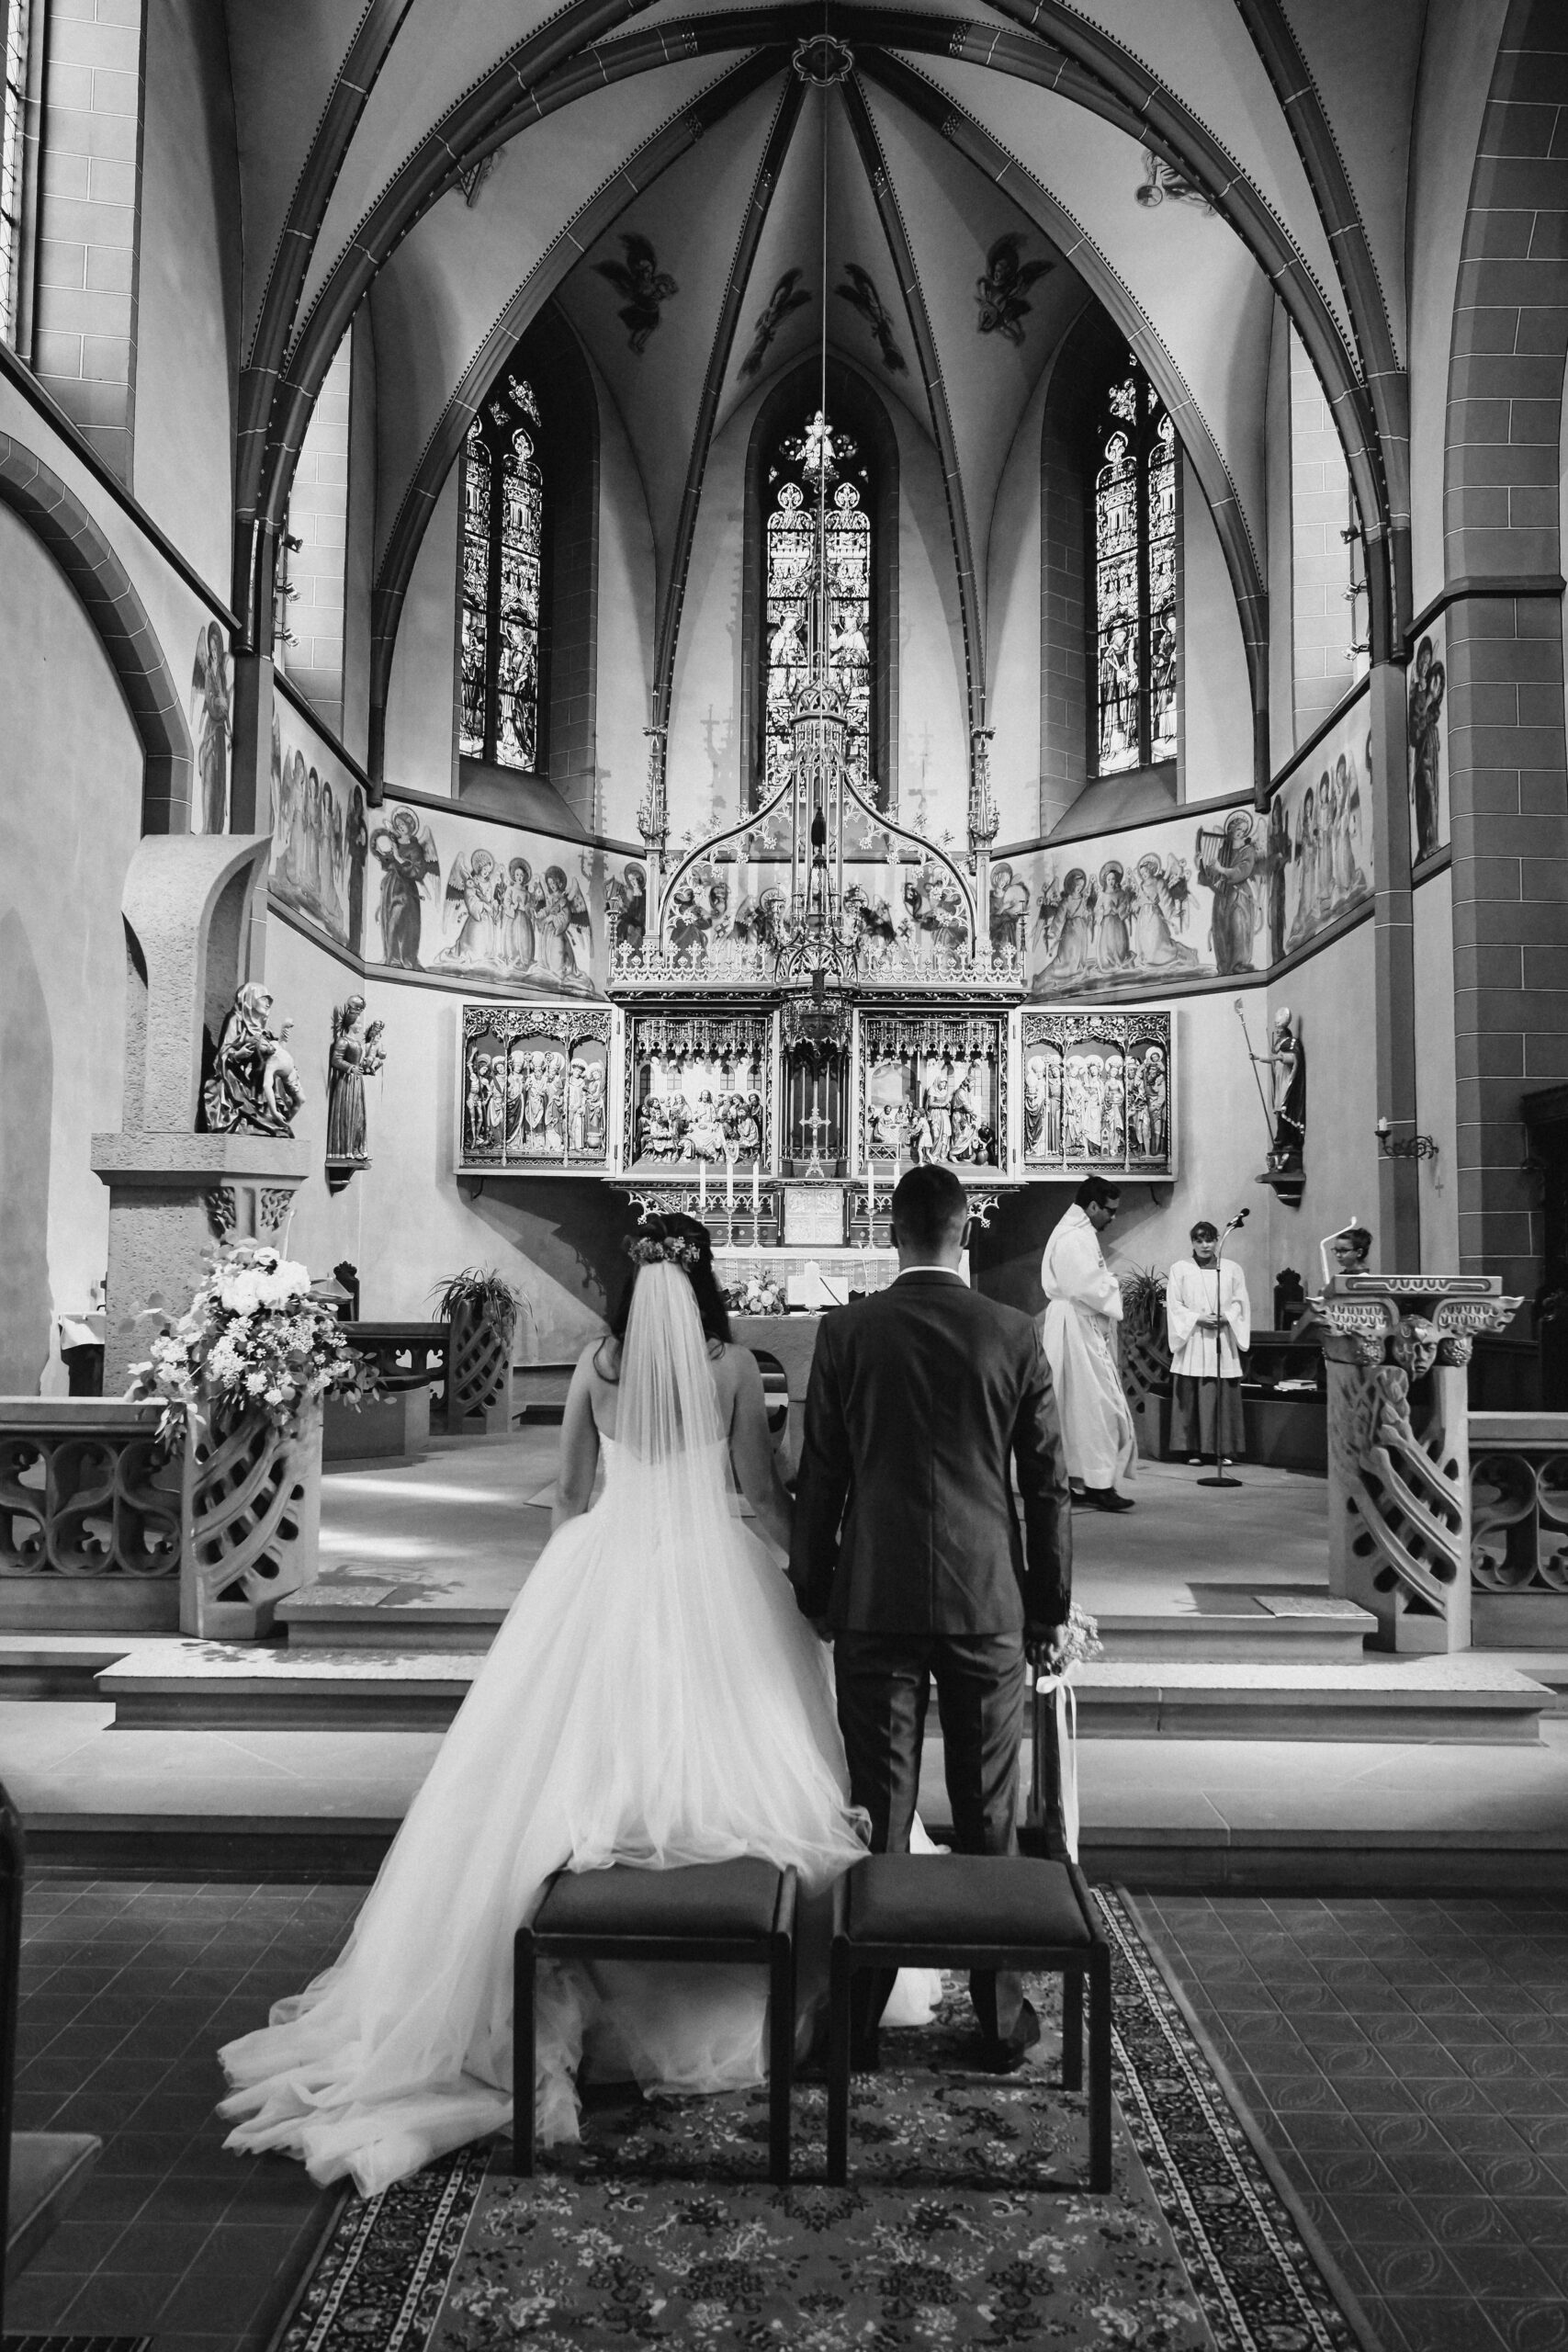 Das Brautpaar in der Kirche bei der kirchlichen Trauung in Zürich am Händchen halten und Küssen während der Eheschließung